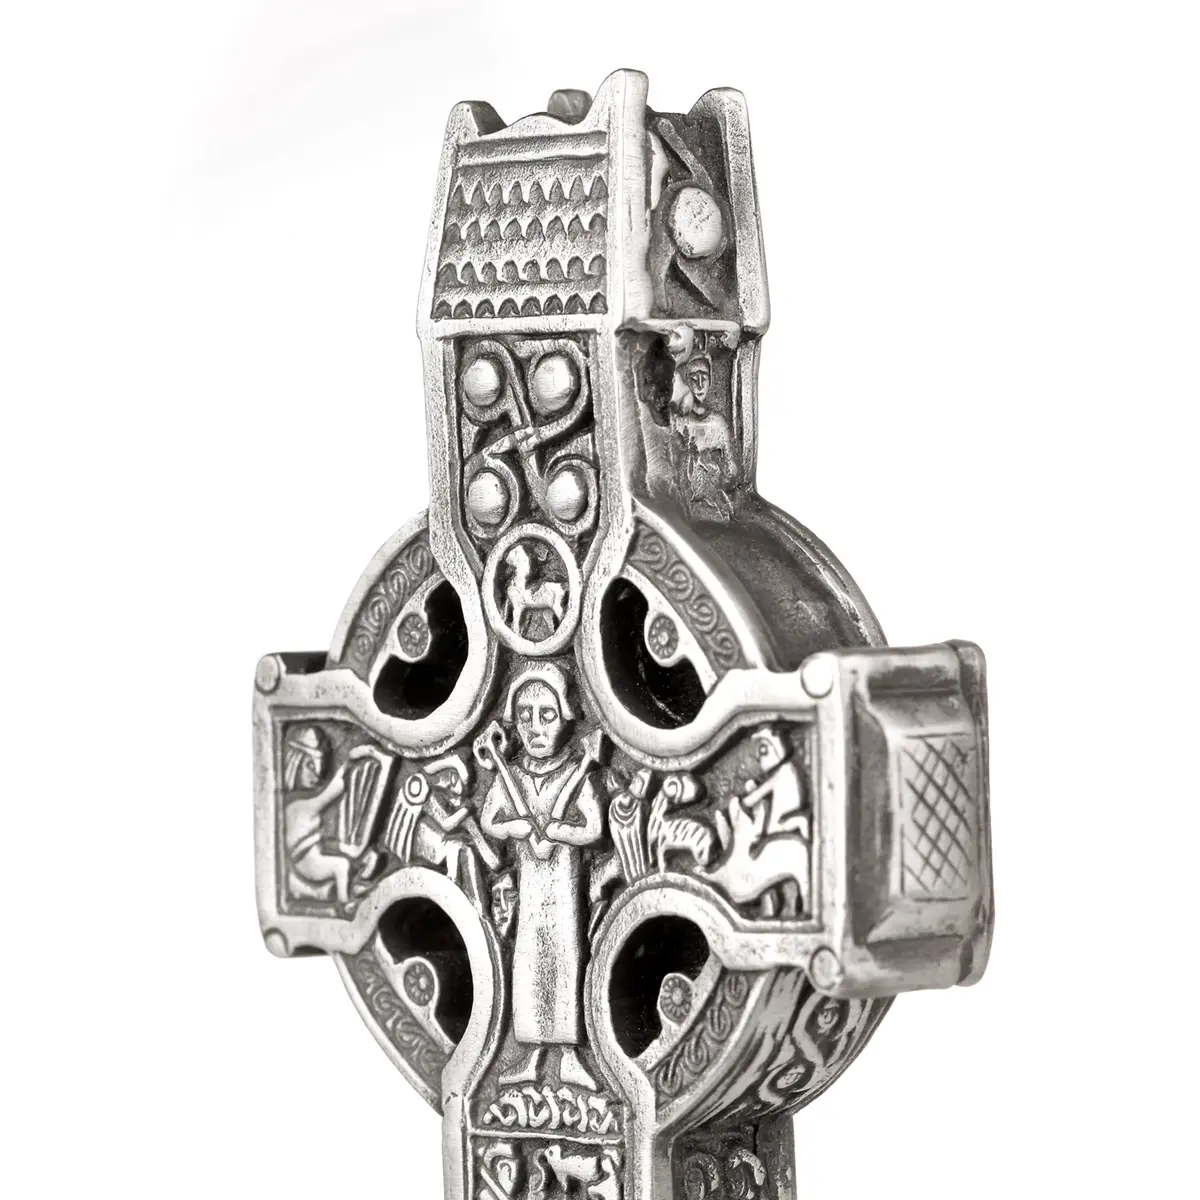 Durrow High Cross - reich verziertes keltisches Kreuz aus Irland